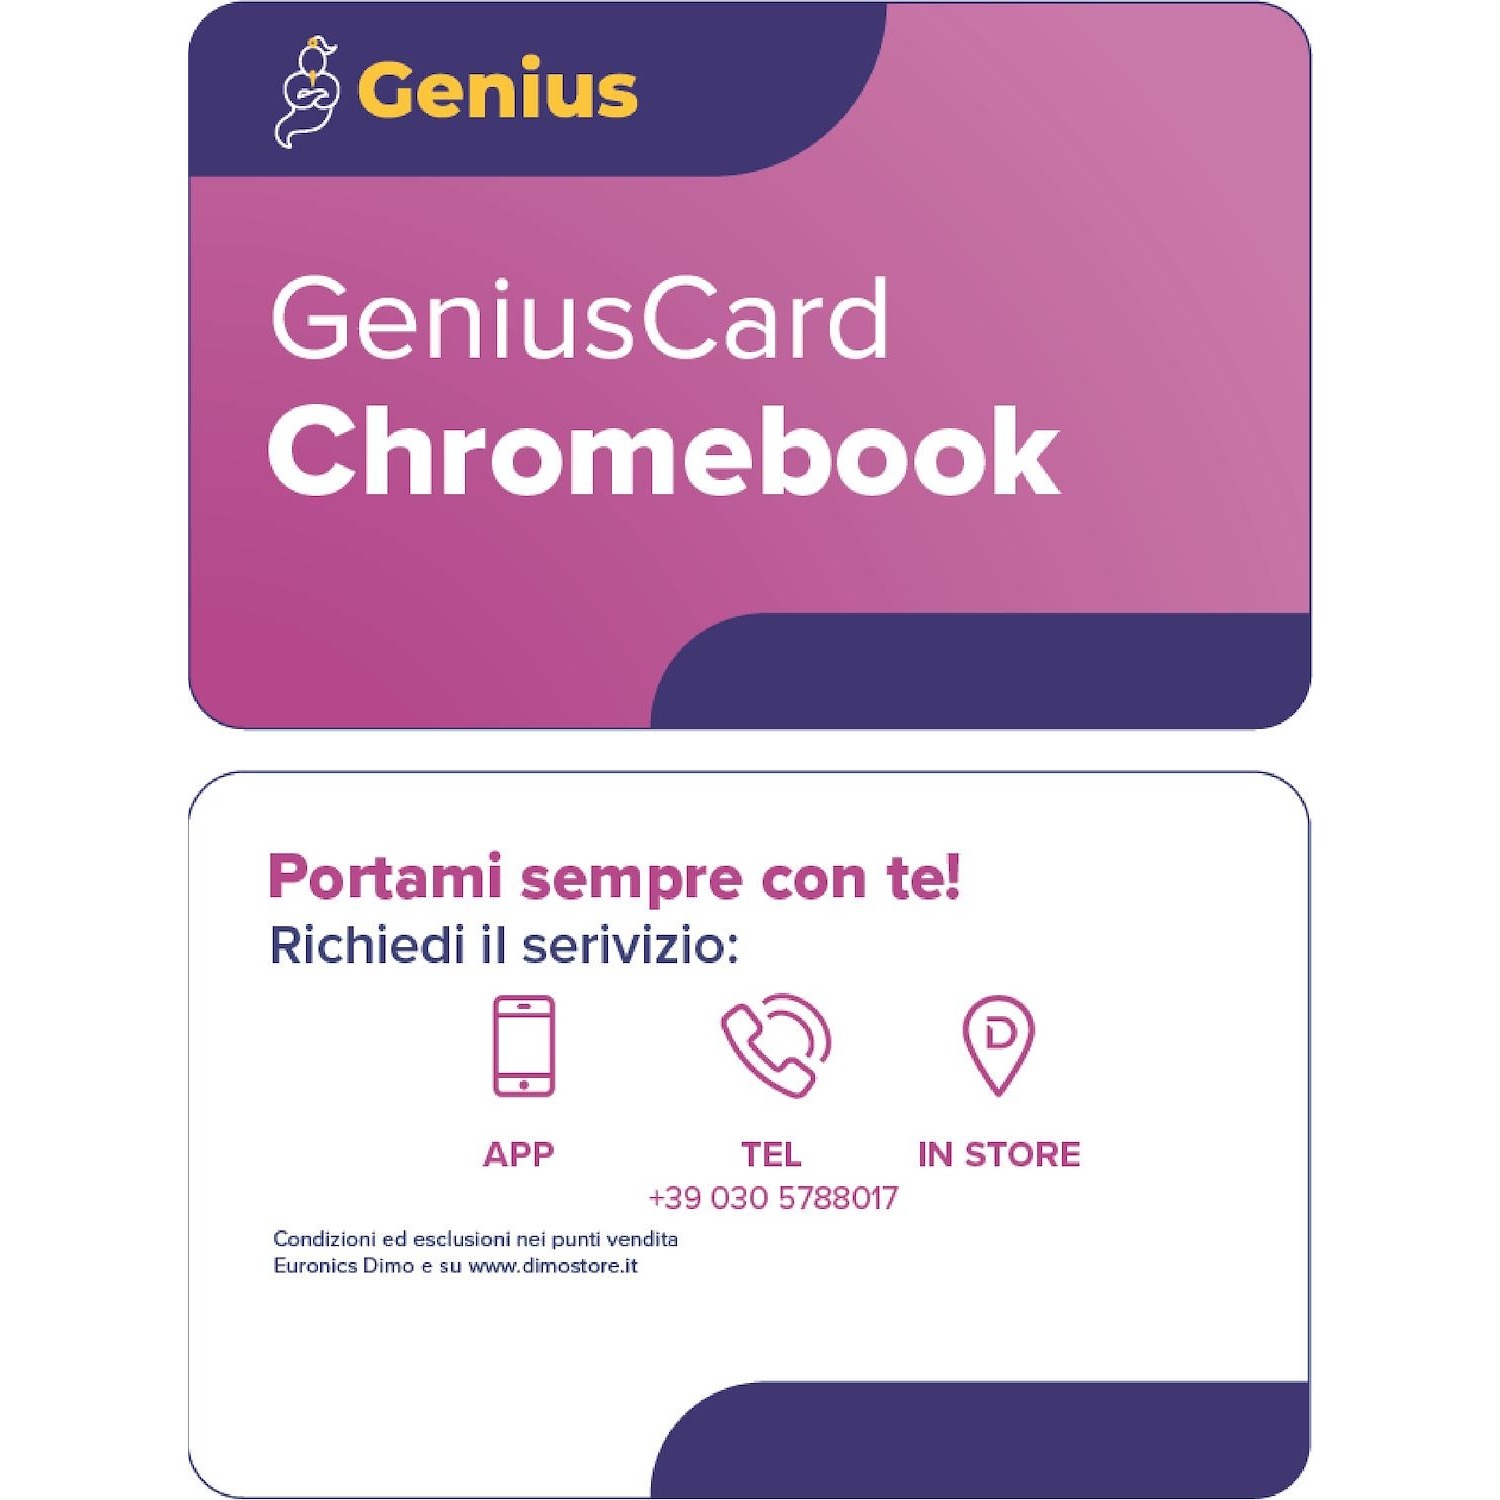 Immagine per GeniusCard Chromebook da DIMOStore